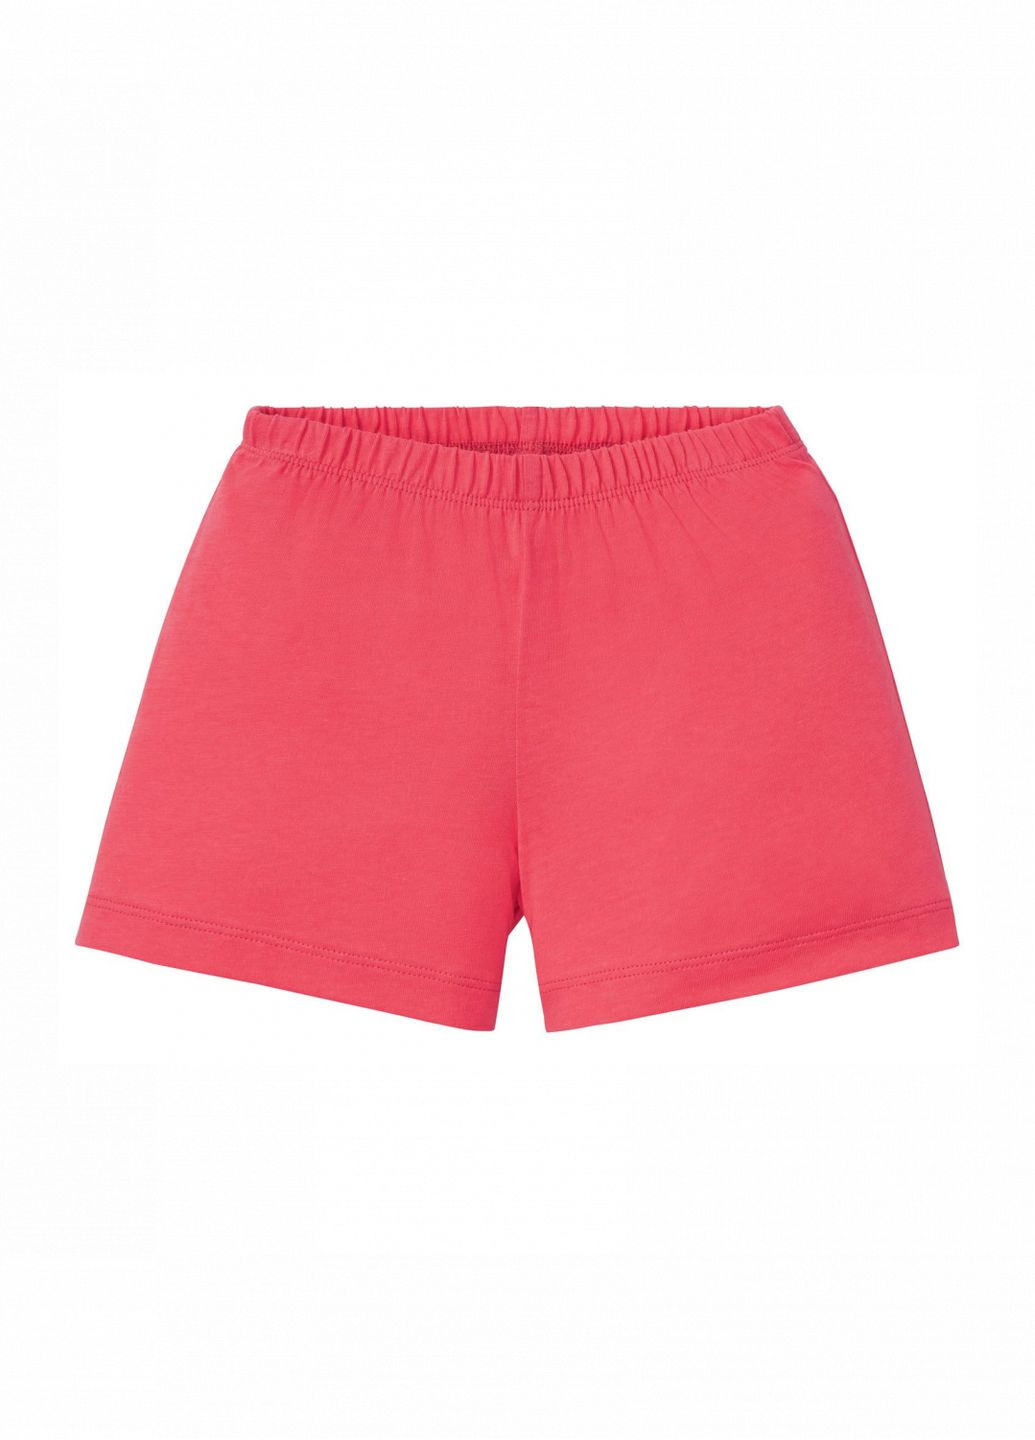 Коралловая демисезонная пижамные шорты хлопковые трикотажные для девочки 349605 Lupilu